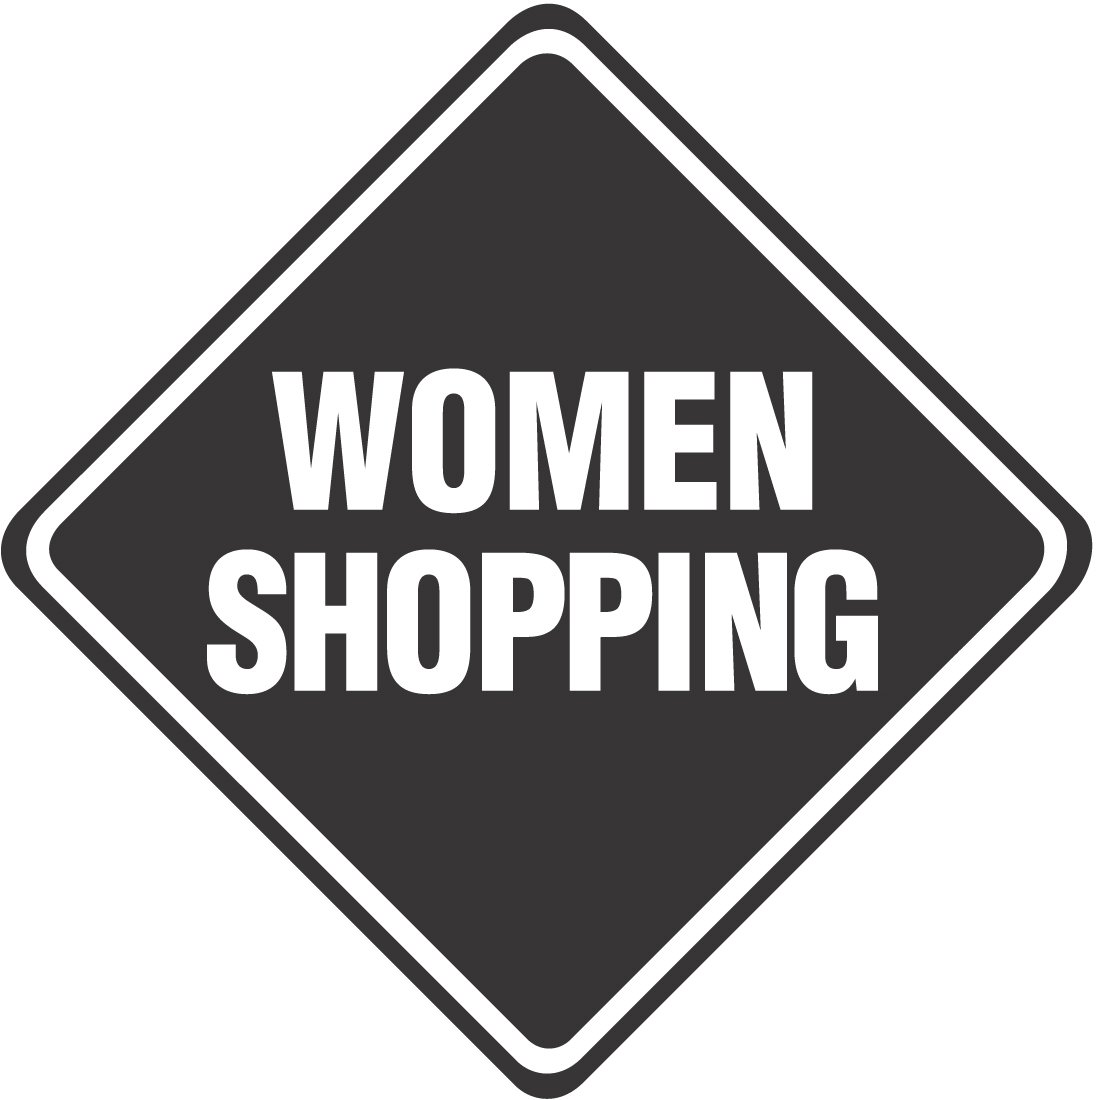 WOMEN SHOPPING